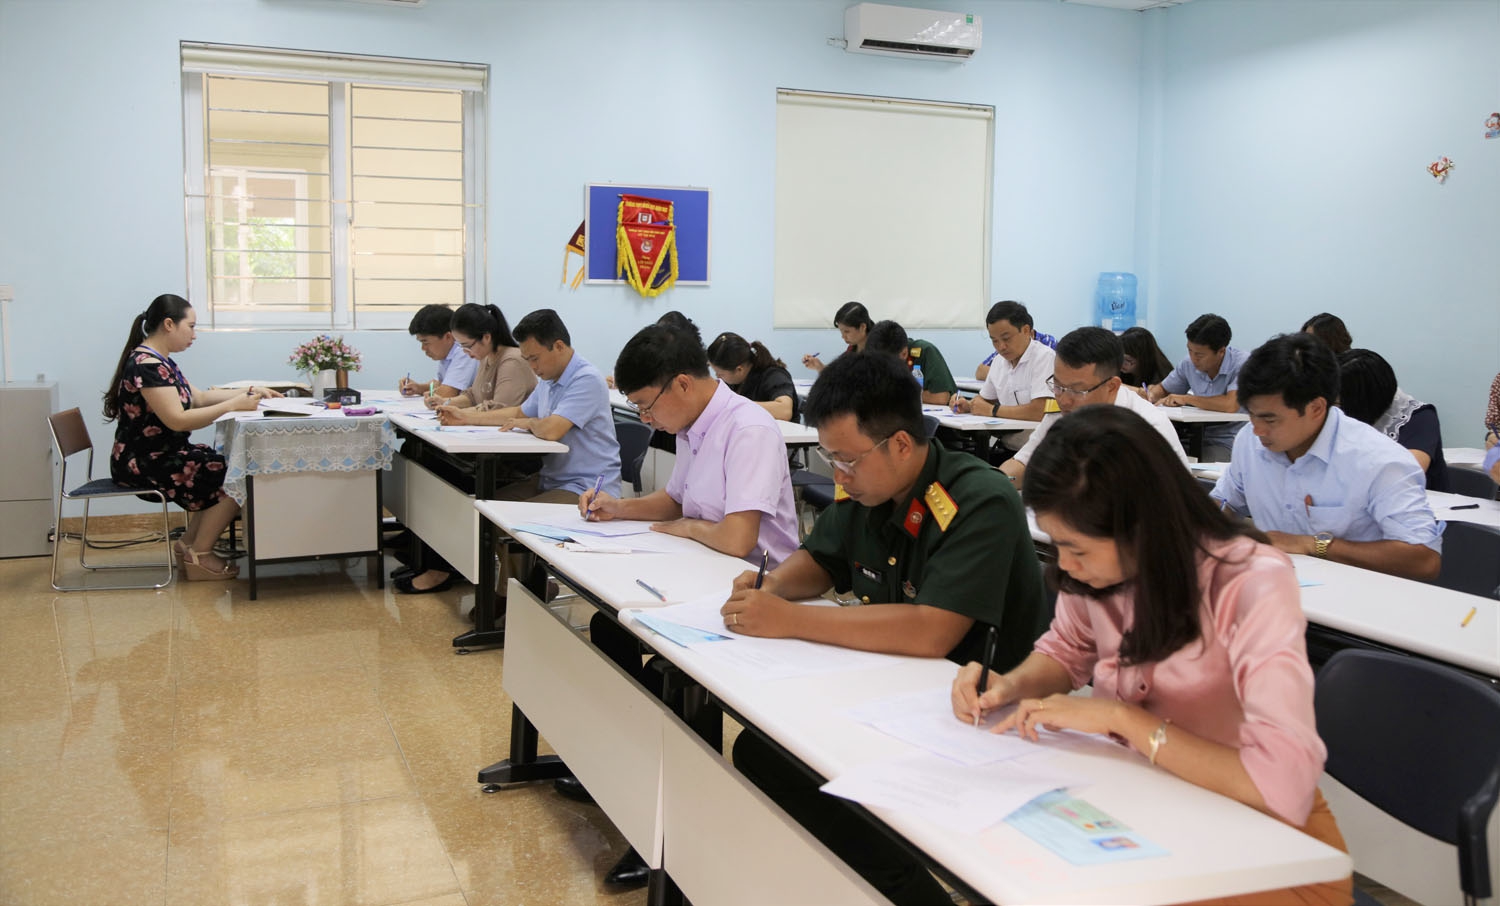 Đại học Quốc gia Hà Nội: Hơn 1.000 thí sinh dự thi sau đại học đợt 1 năm 2020 - Ảnh minh hoạ 2